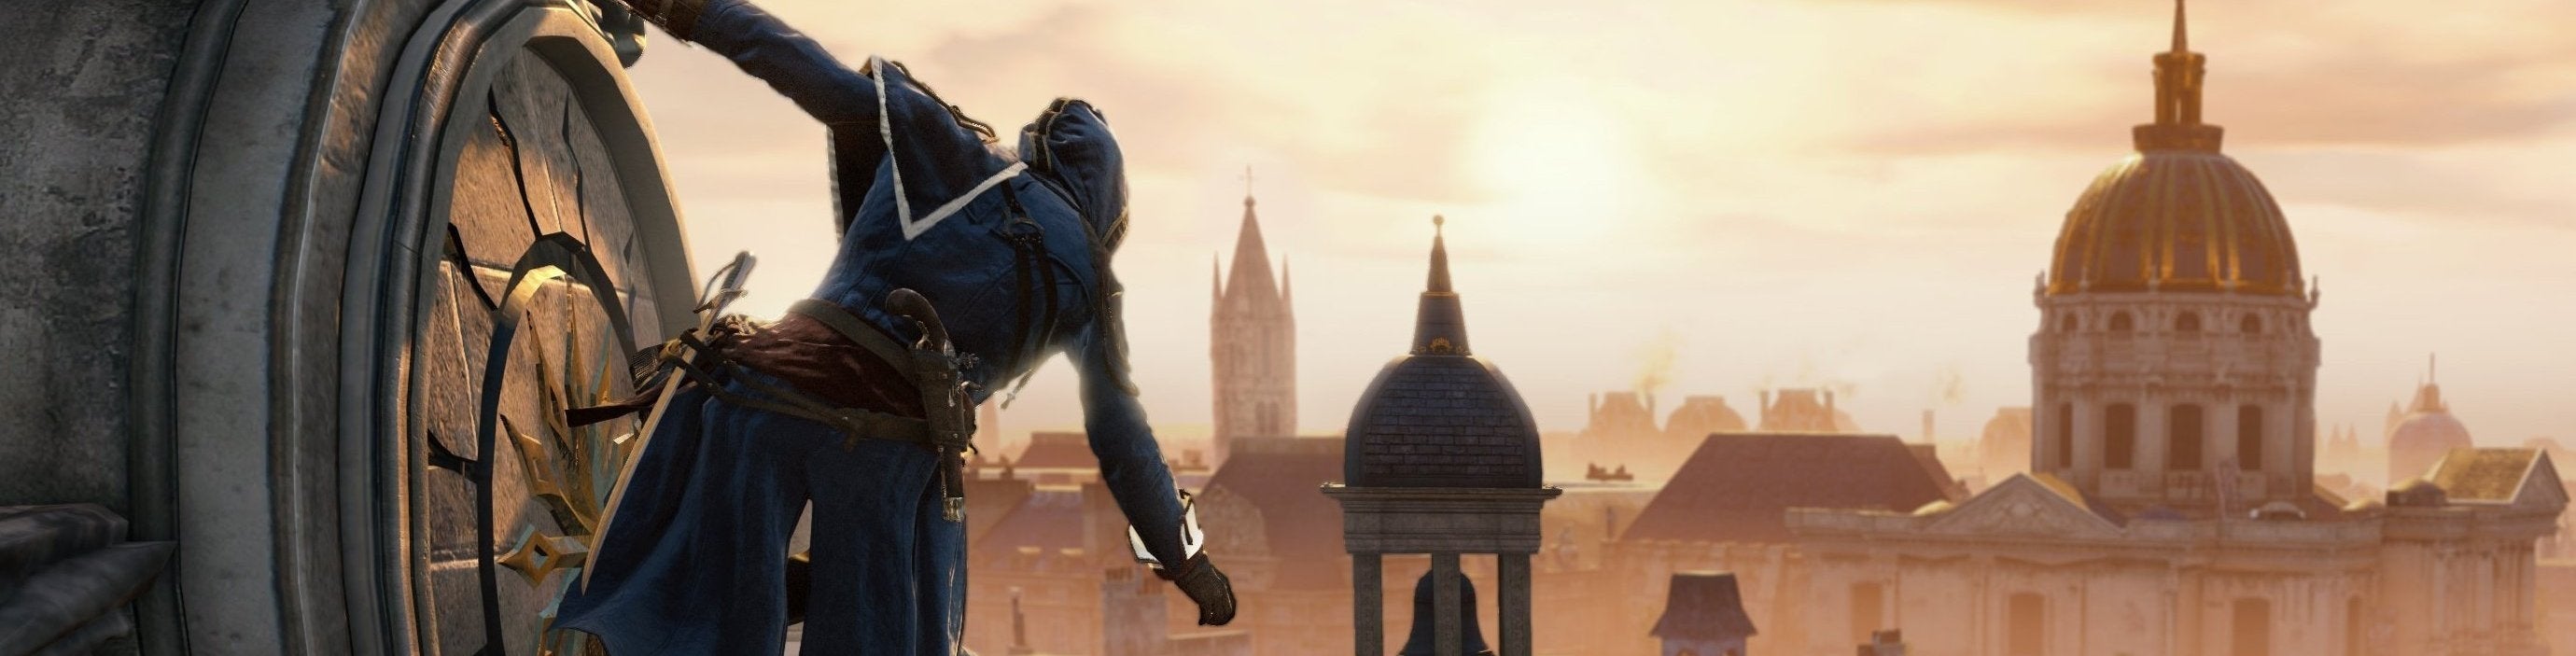 Obrazki dla Jak Assassin's Creed Unity chce zacząć wszystko od początku